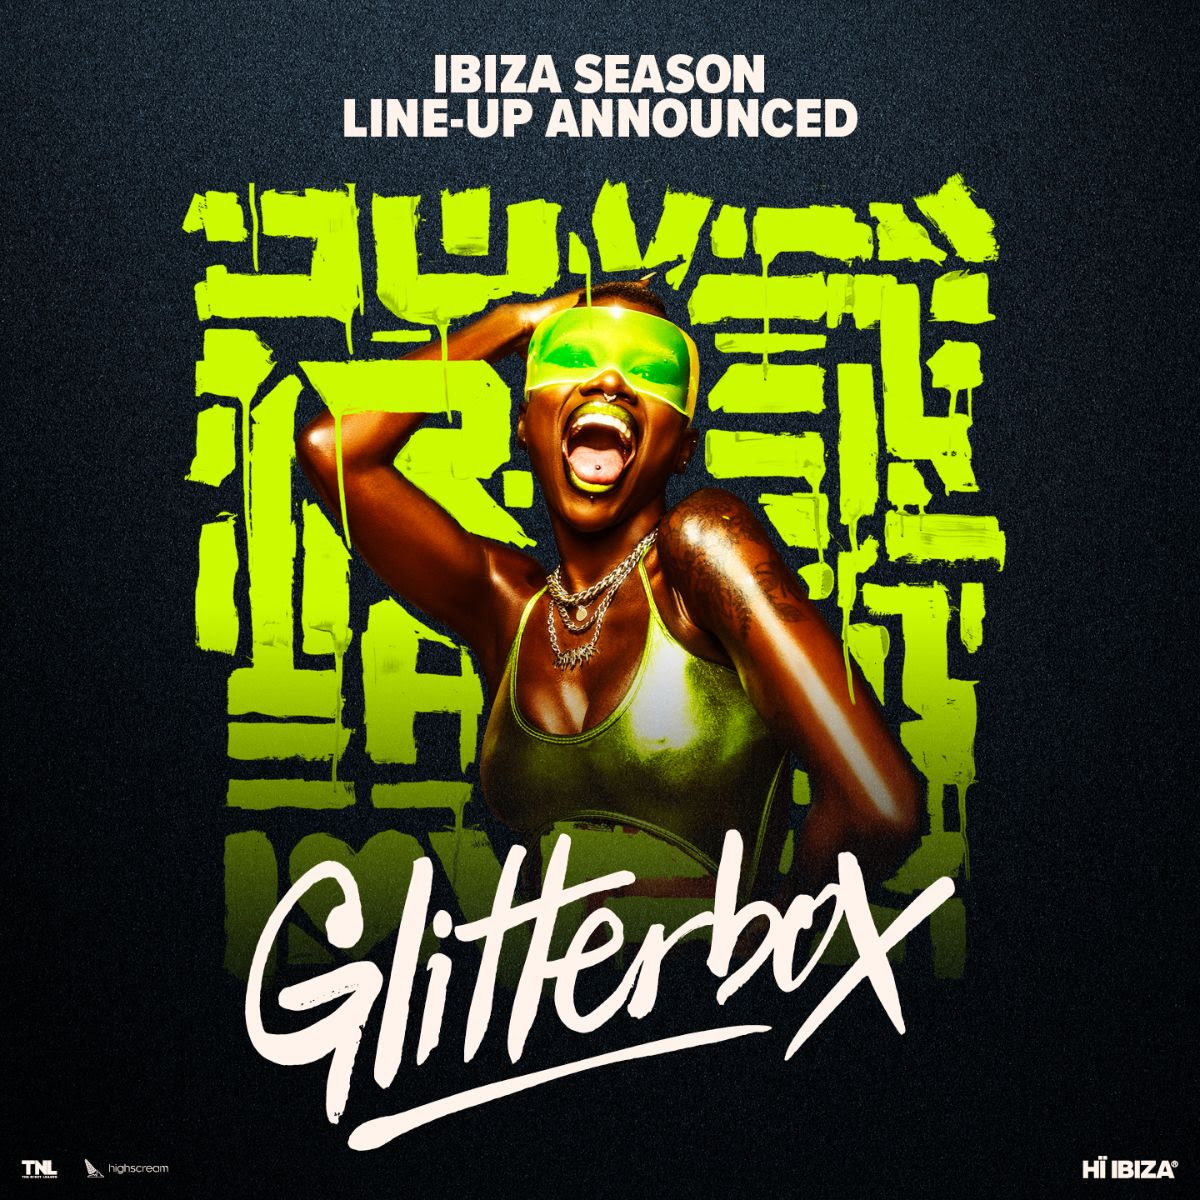 Glitterbox at Hi Ibiza